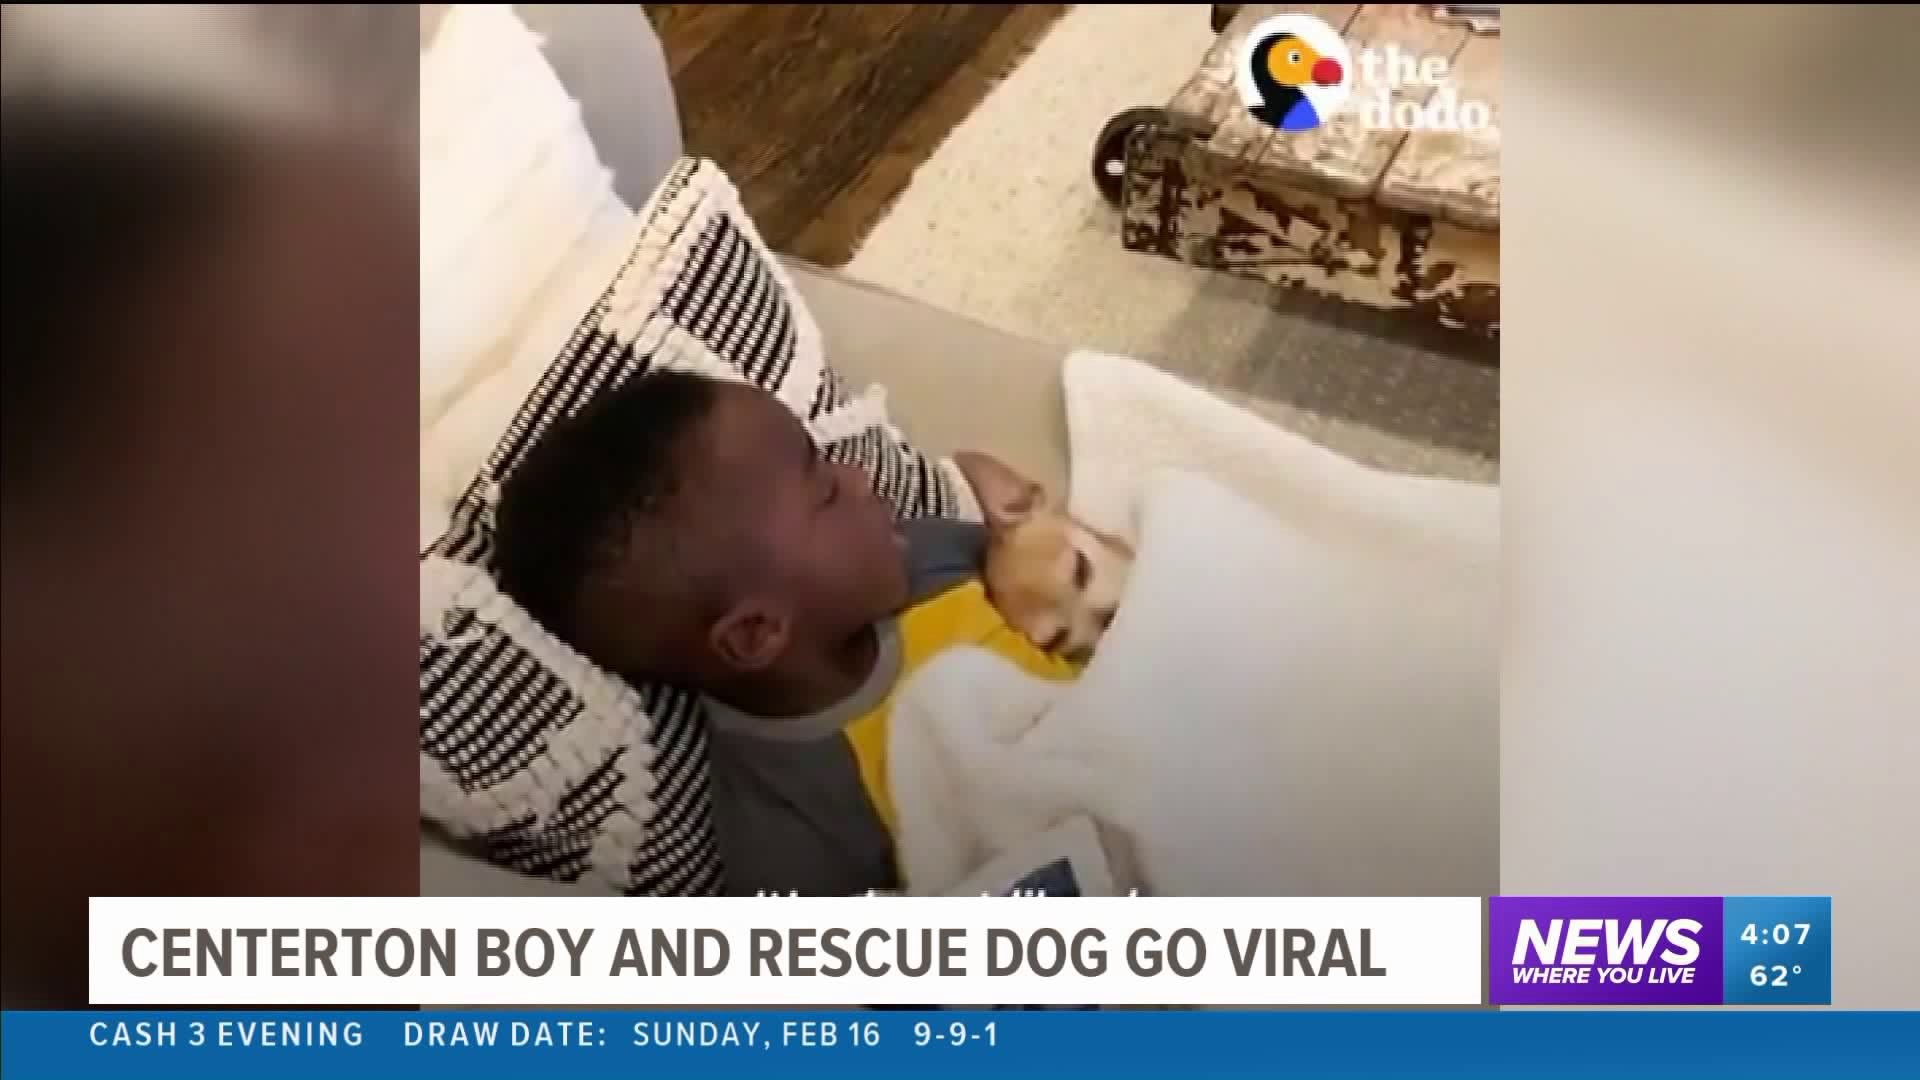 Centerton Boy and Rescue Dog go Viral